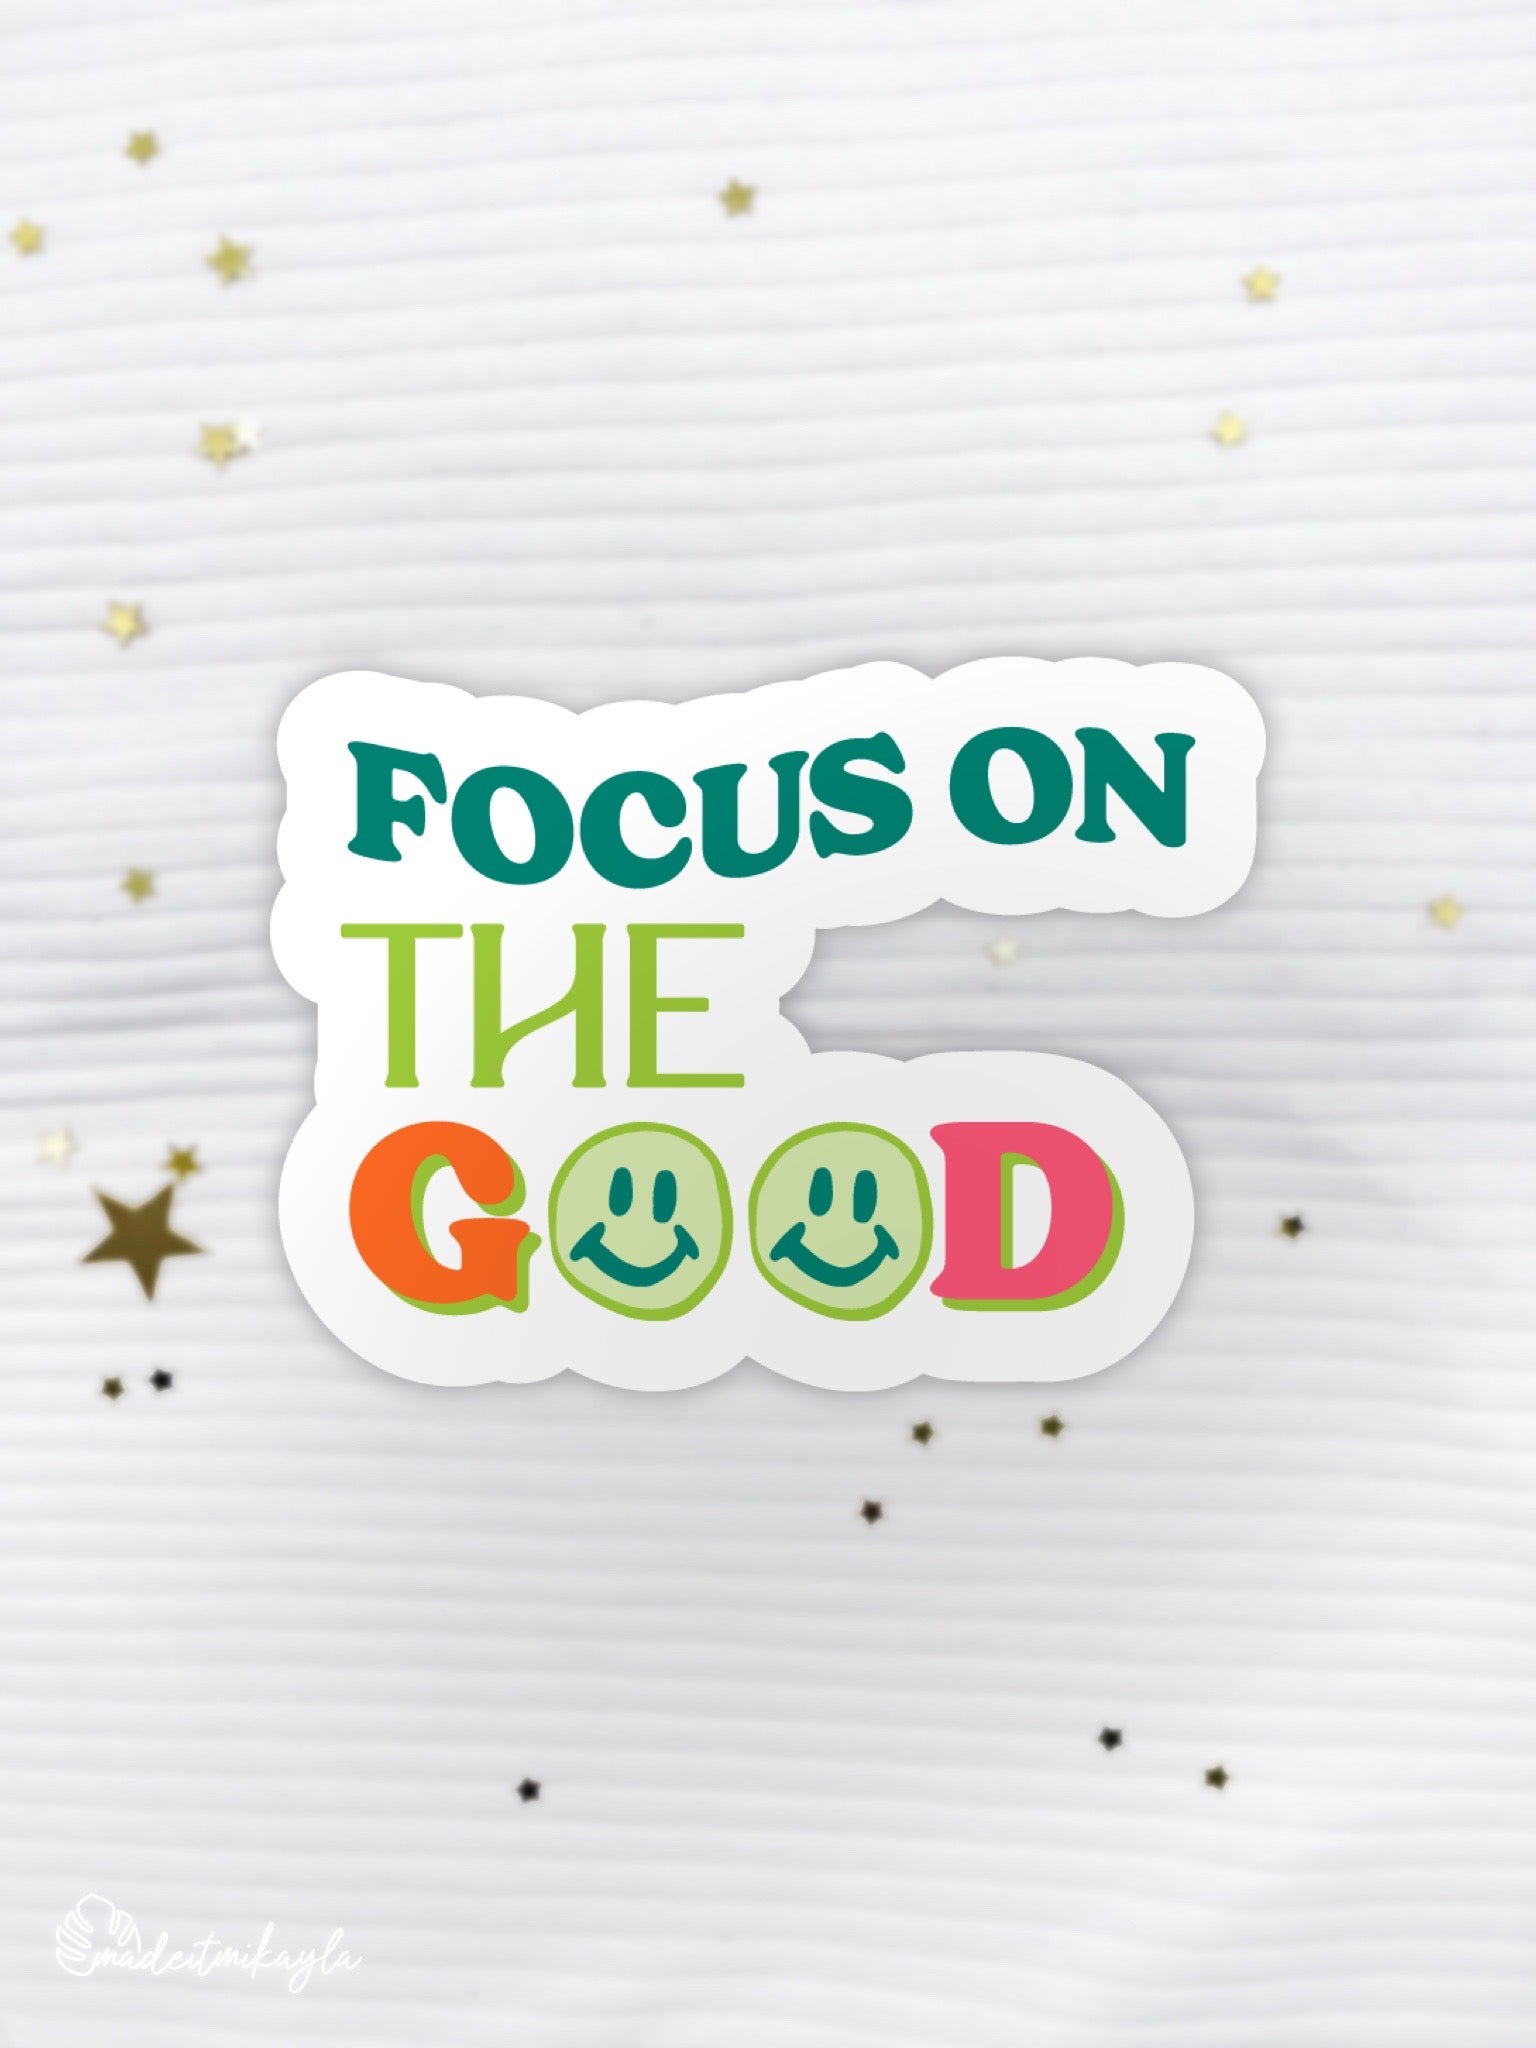 Focus On The Good Sticker | MadeItMikayla